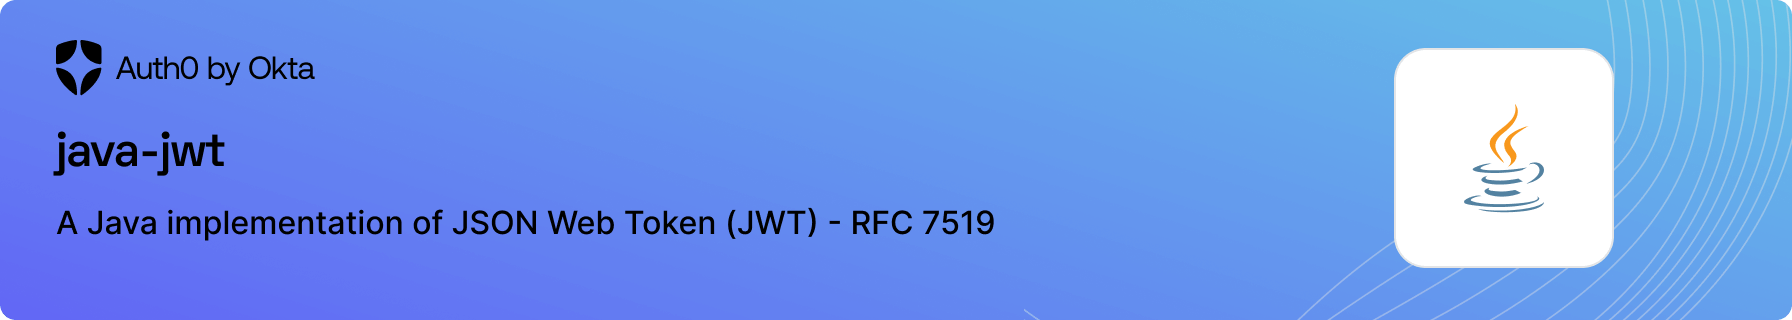 A Java implementation of JSON Web Token (JWT) - RFC 7519.